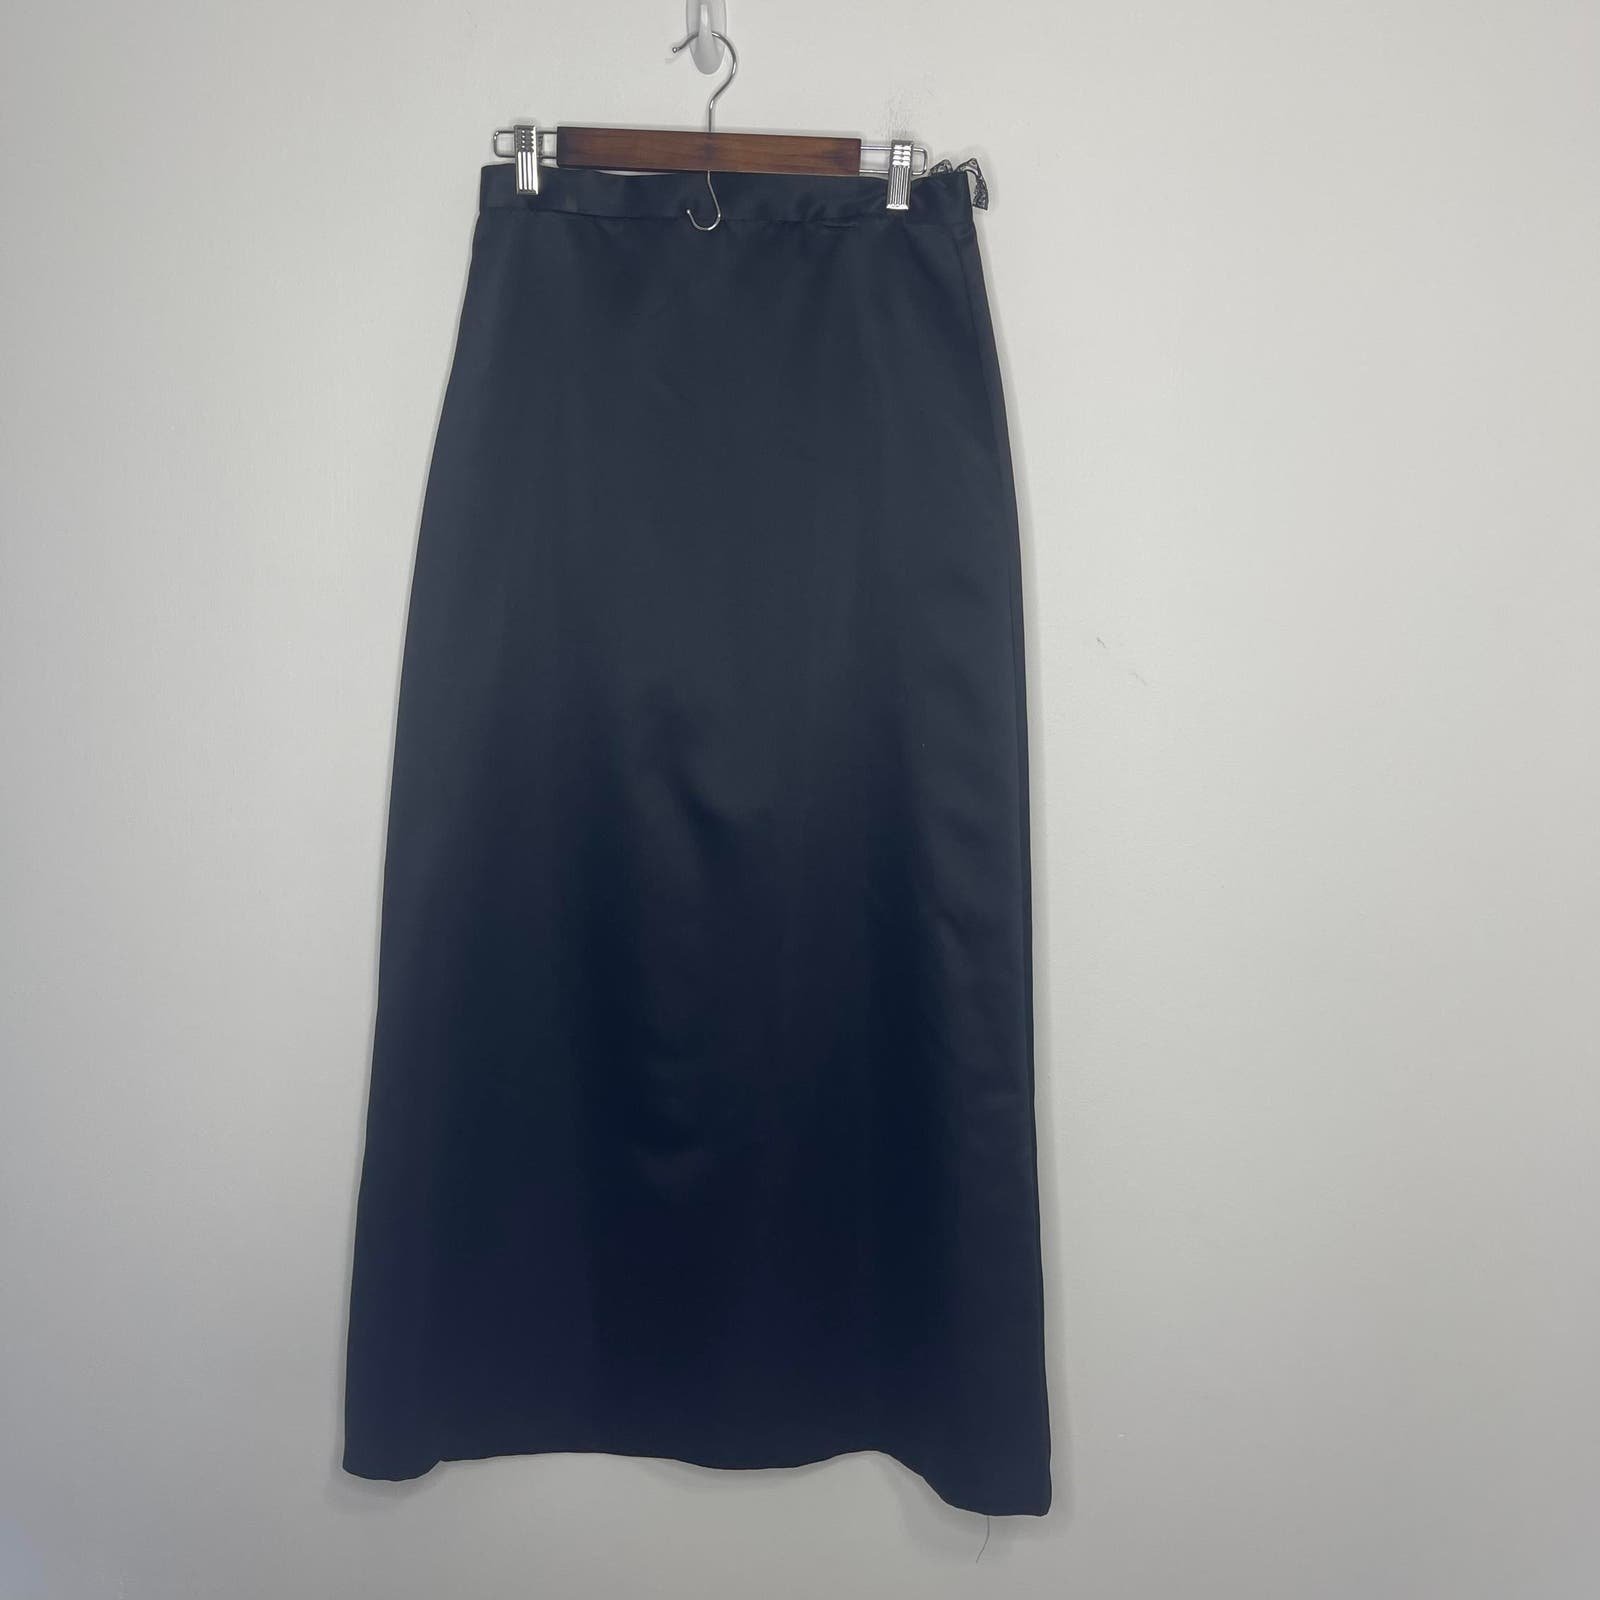 Personality J. R. Nites by Caliendo black long skirt si